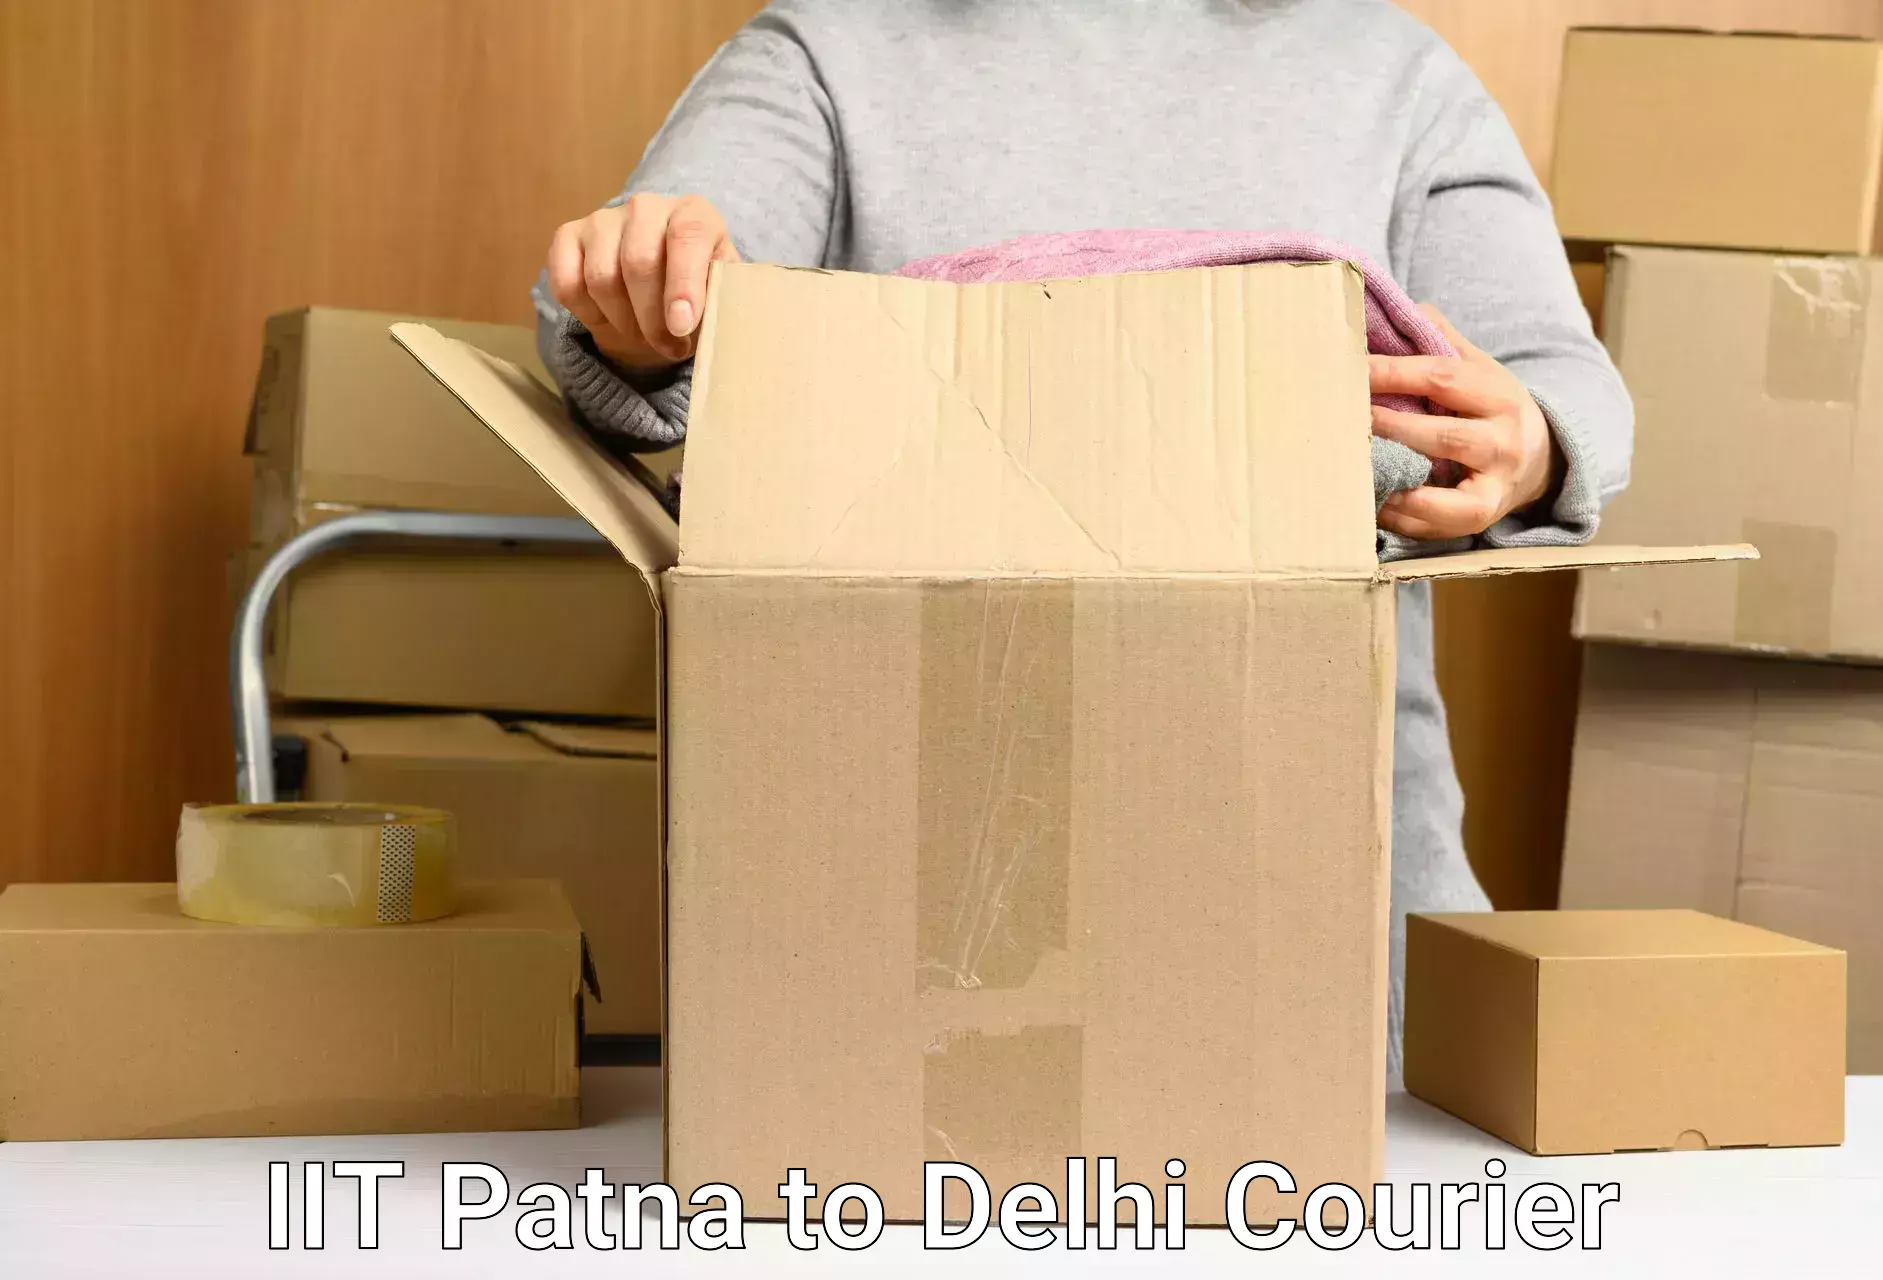 High-capacity parcel service IIT Patna to Delhi